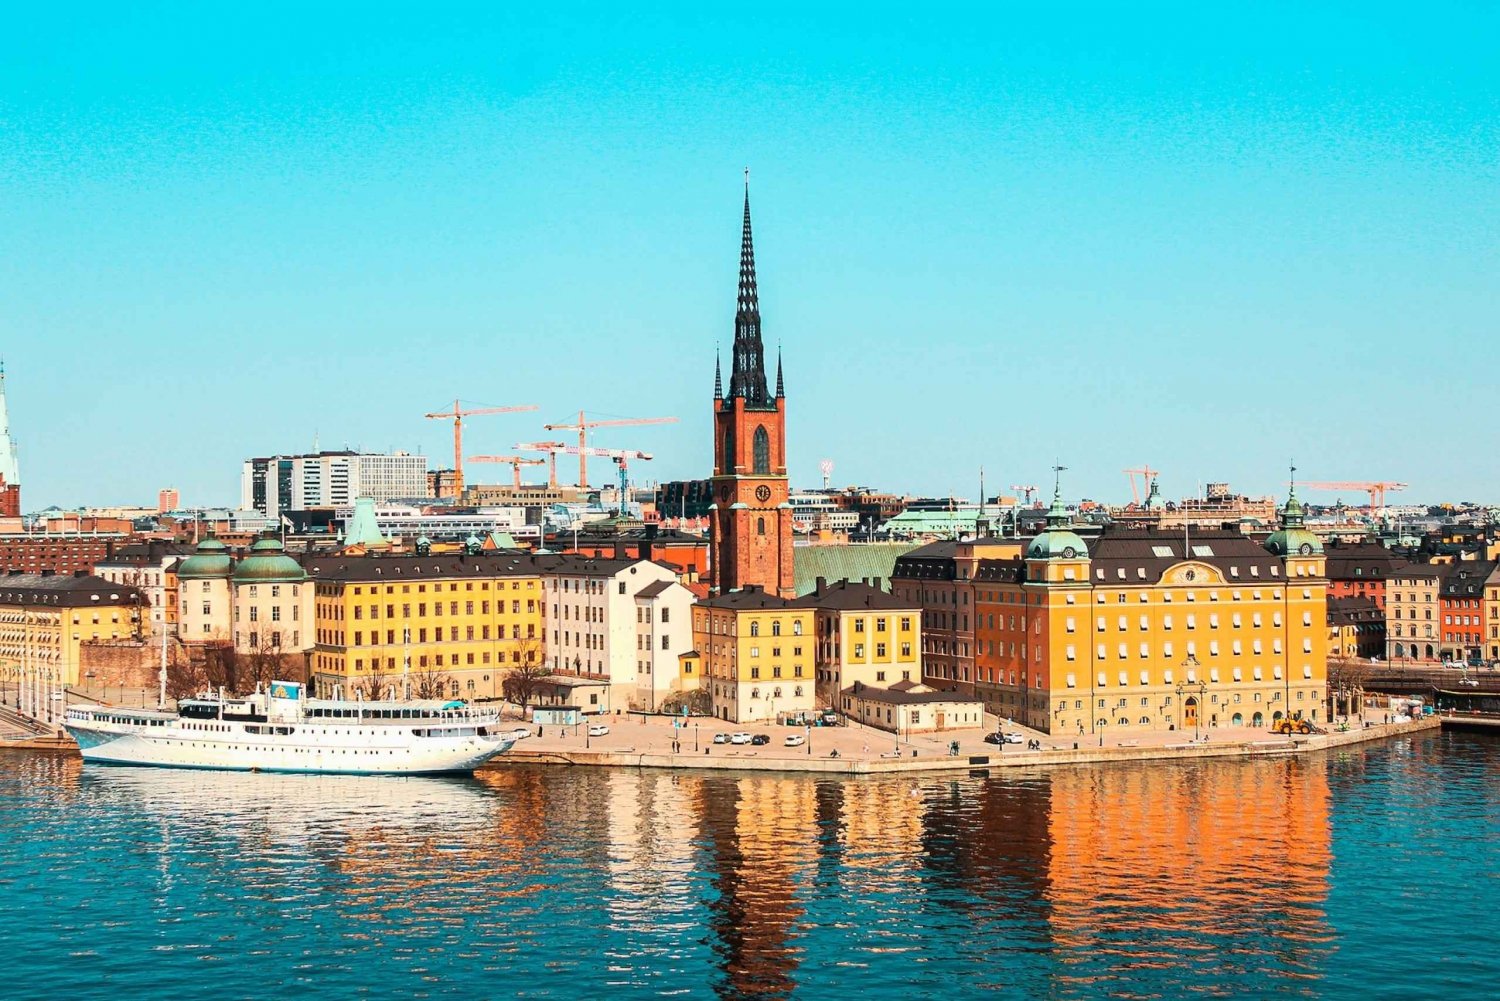 Excursão fotográfica: Excursão histórica de um dia às Ilhas de Estocolmo